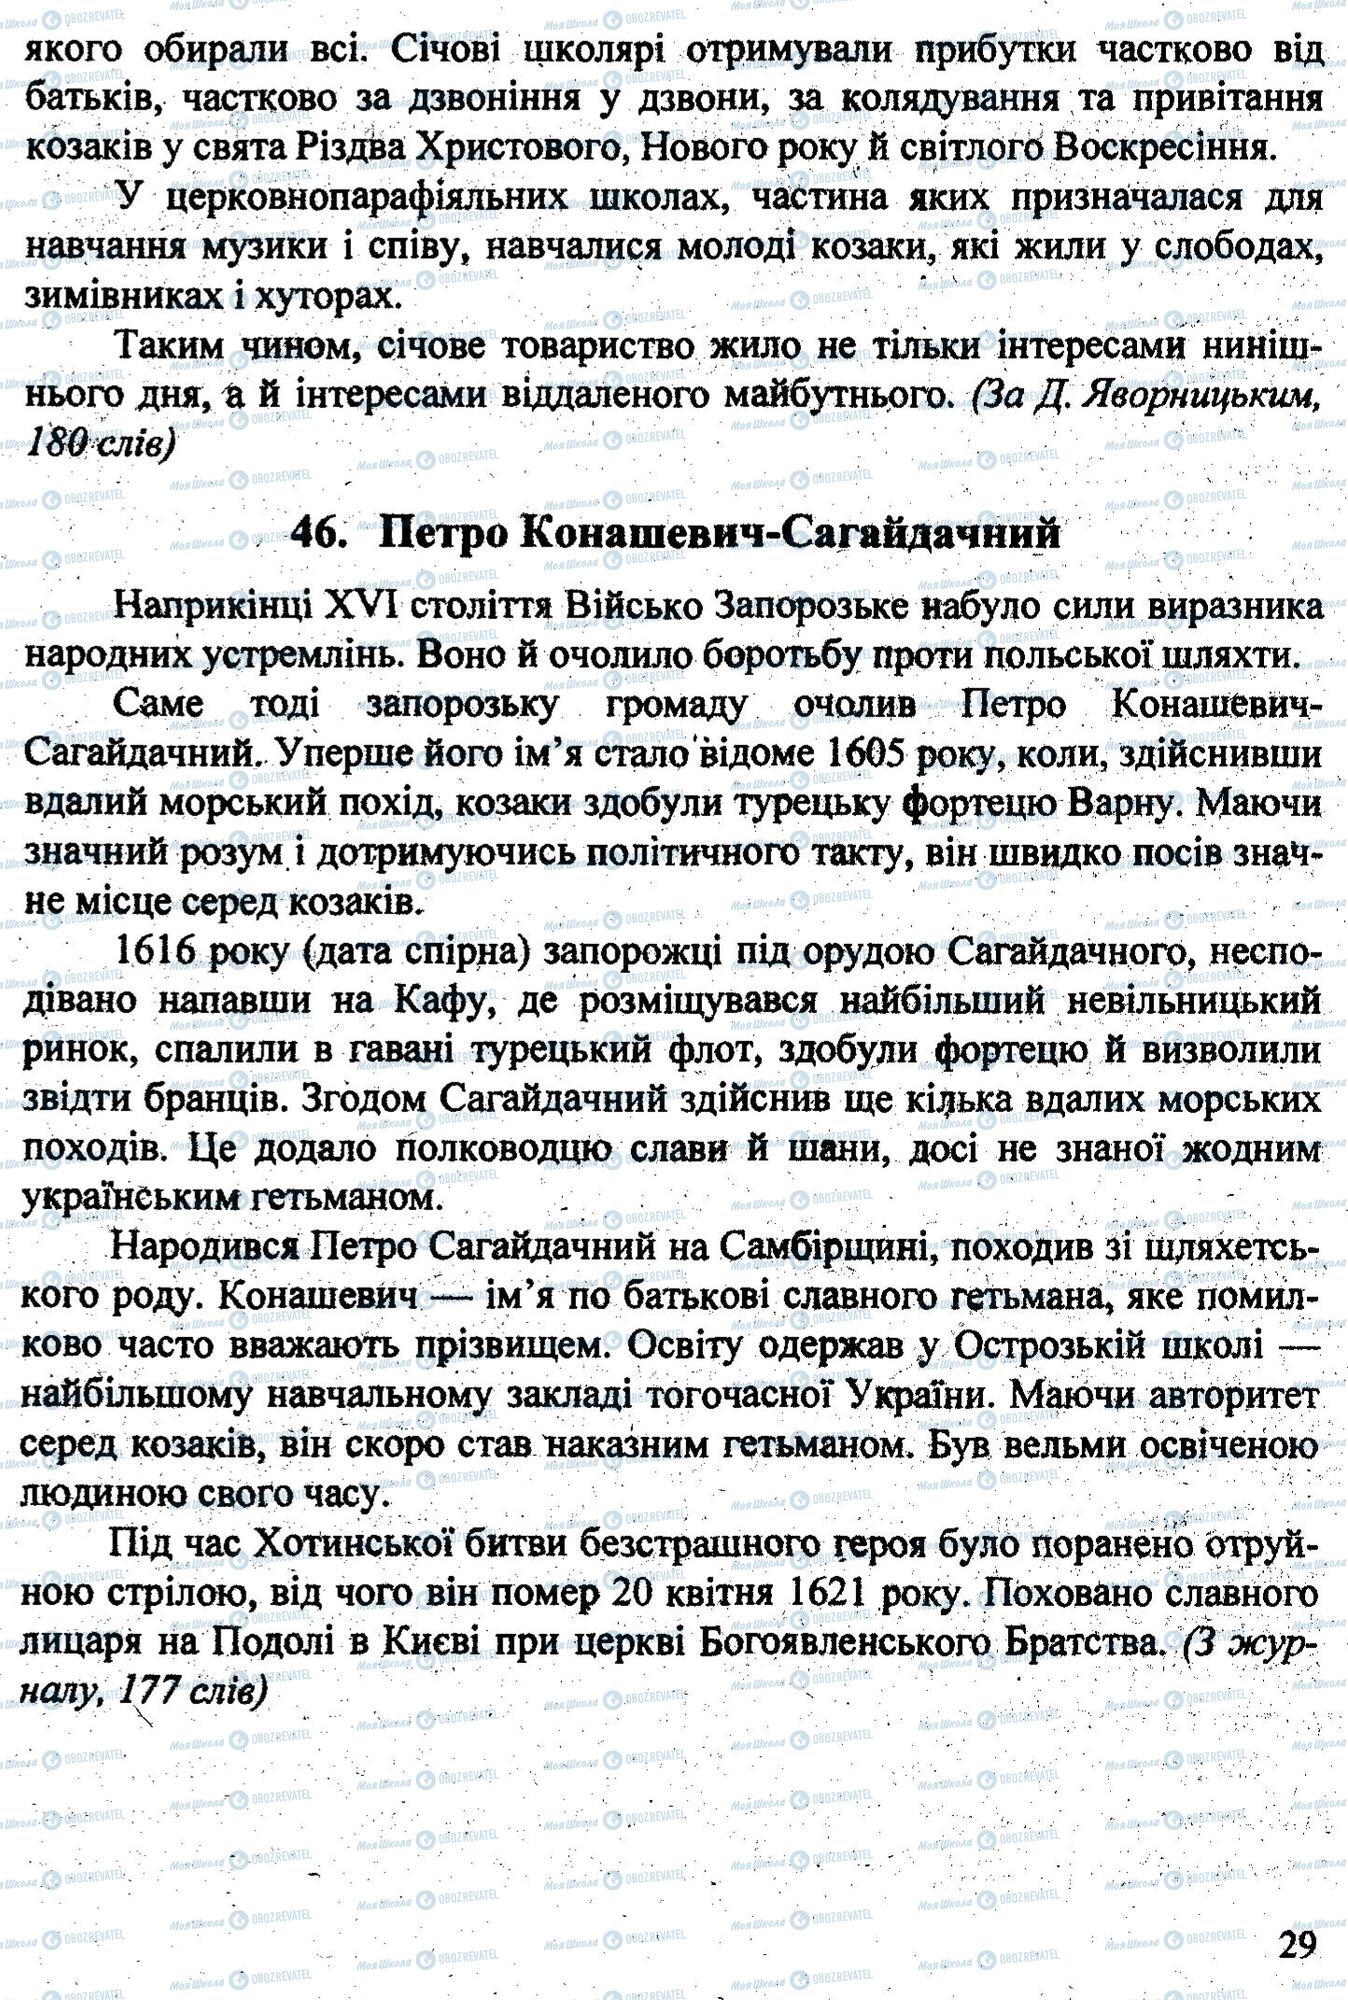 ДПА Укр мова 9 класс страница 0028